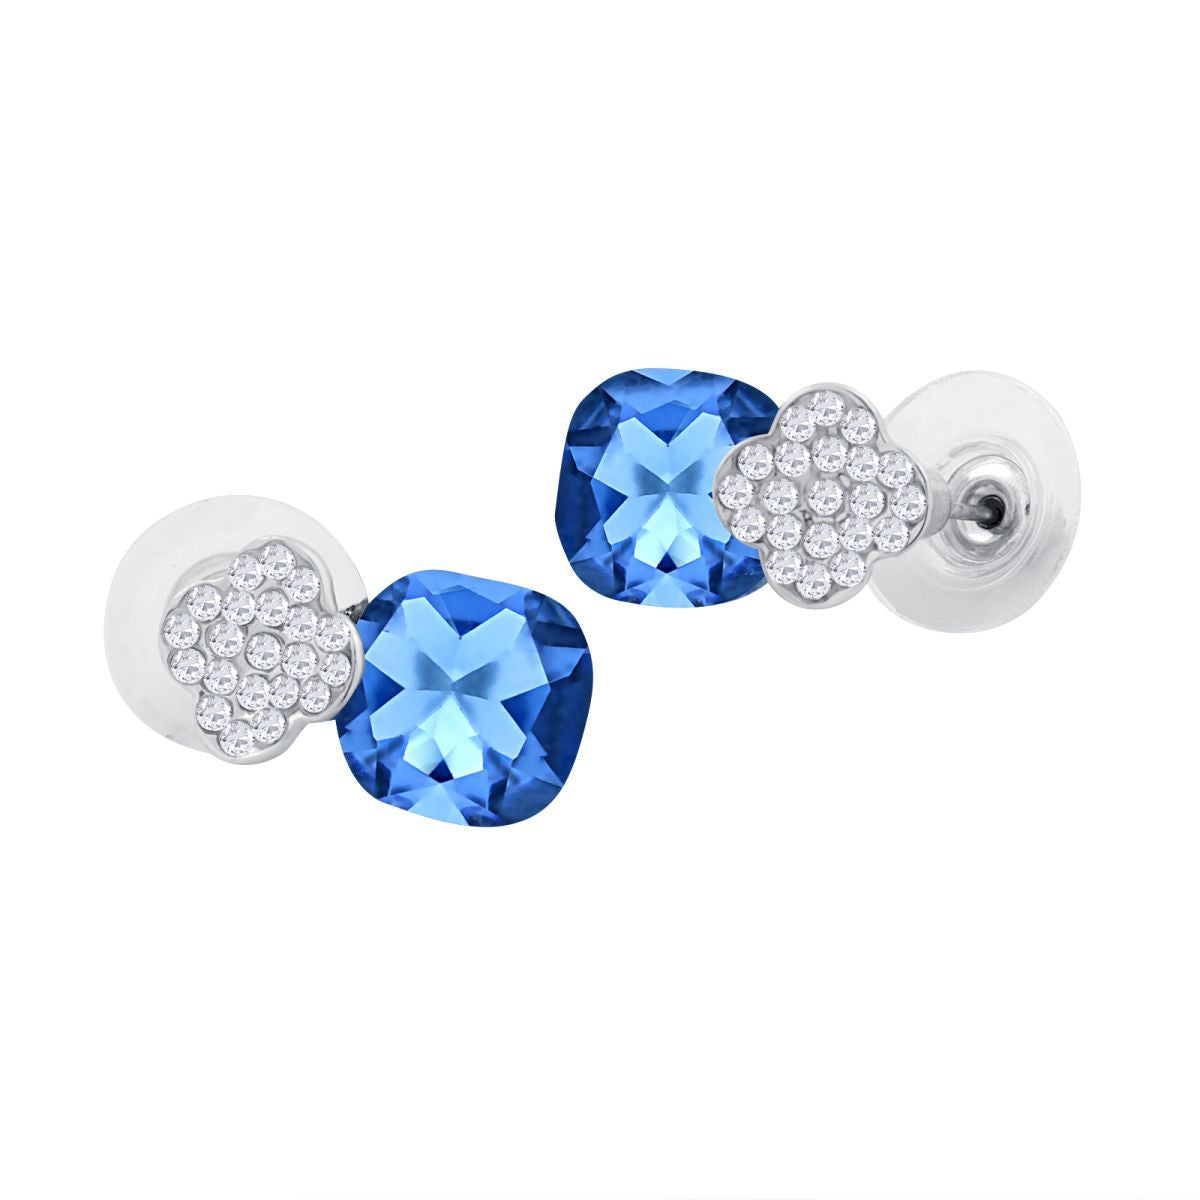 Quatrefoil Aaa Crystal American Diamond Blue Rhodium Stud Earring